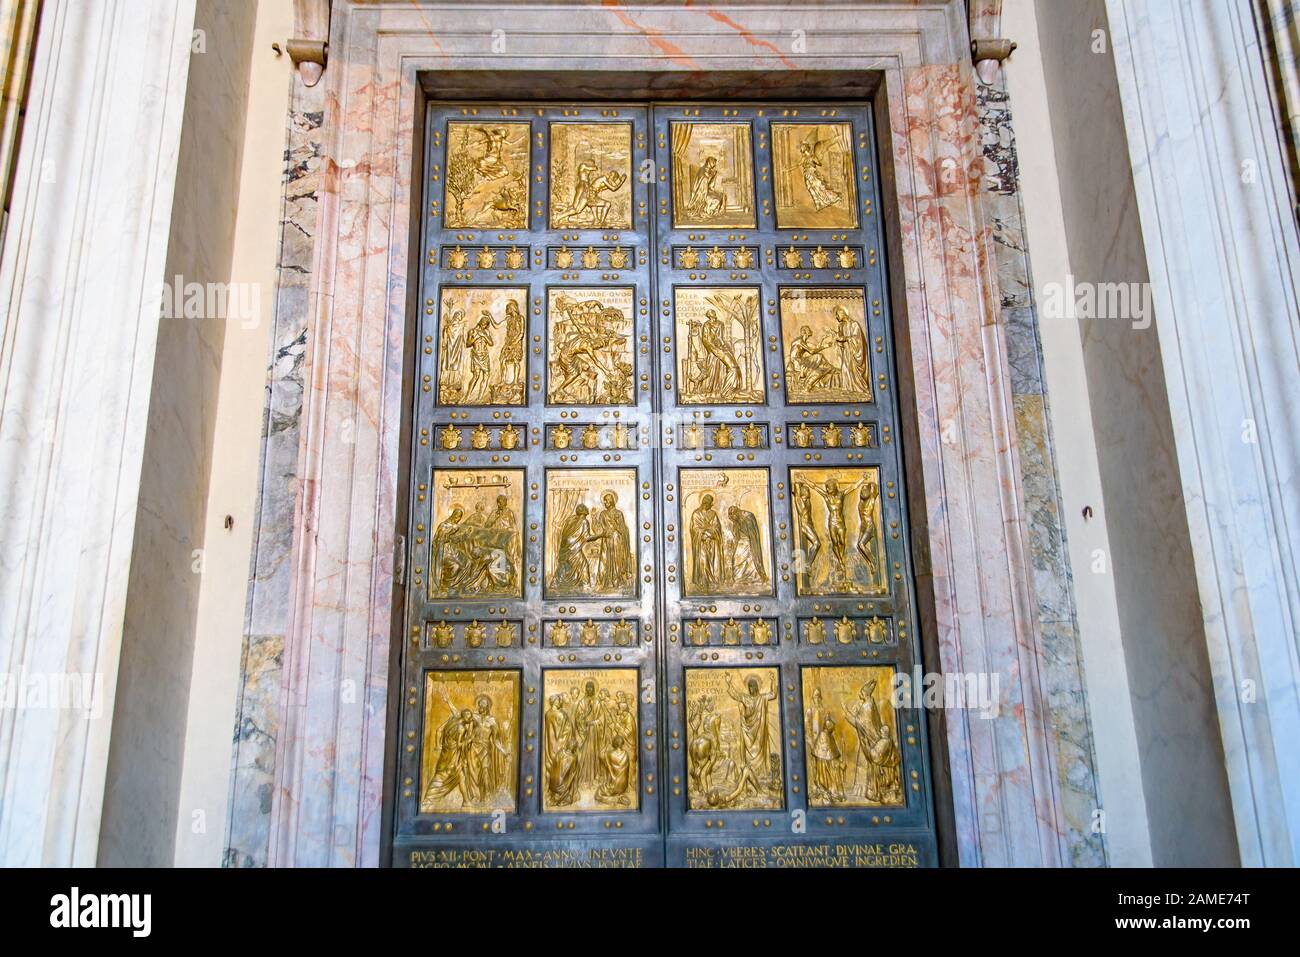 La porte Sainte de la basilique Saint-Pierre dans la Cité du Vatican Banque D'Images